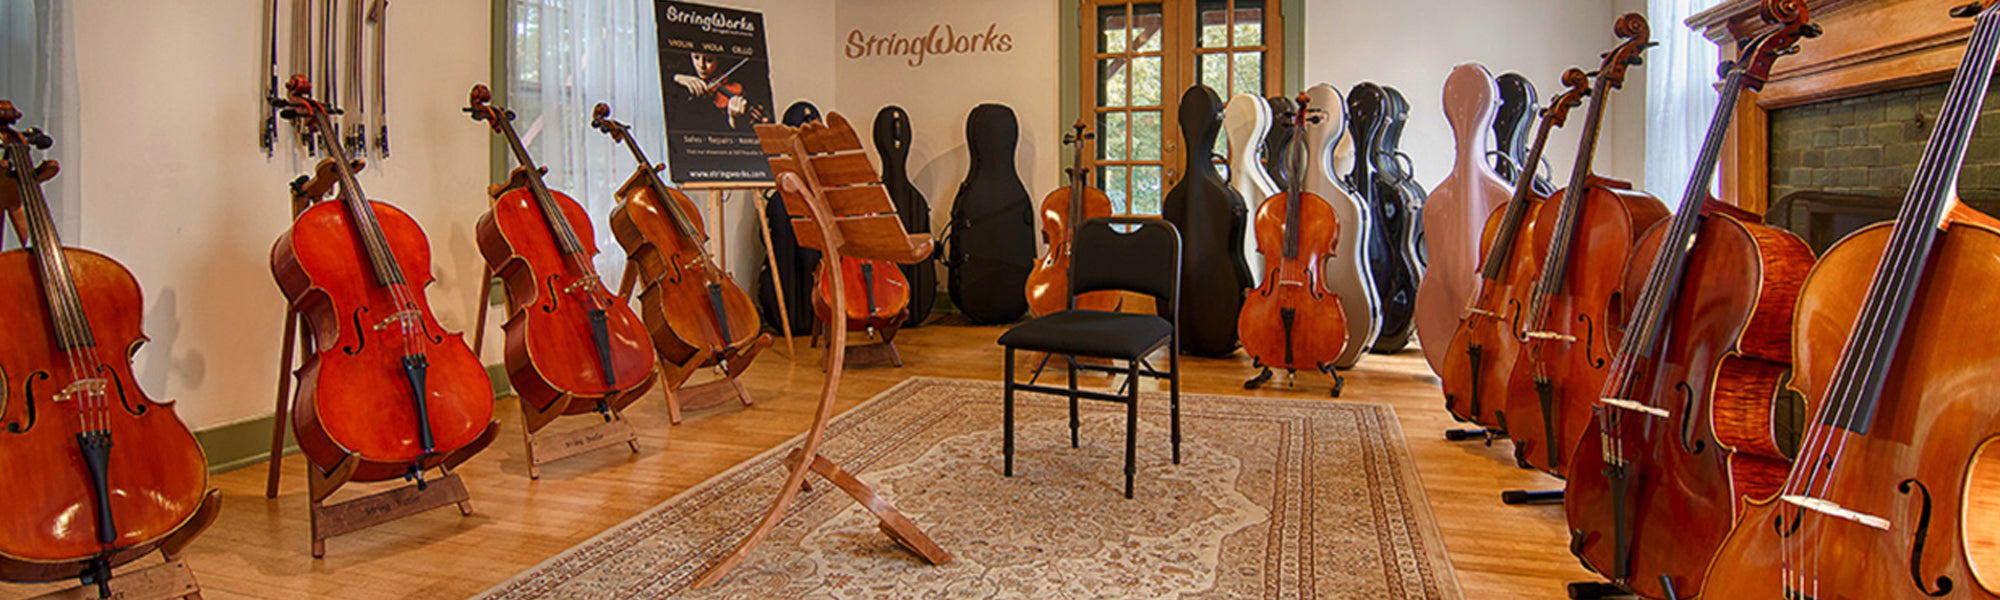 Stejl komplet leder Buy High Quality Violas Cellos & Violins for Sale Online | StringWorks